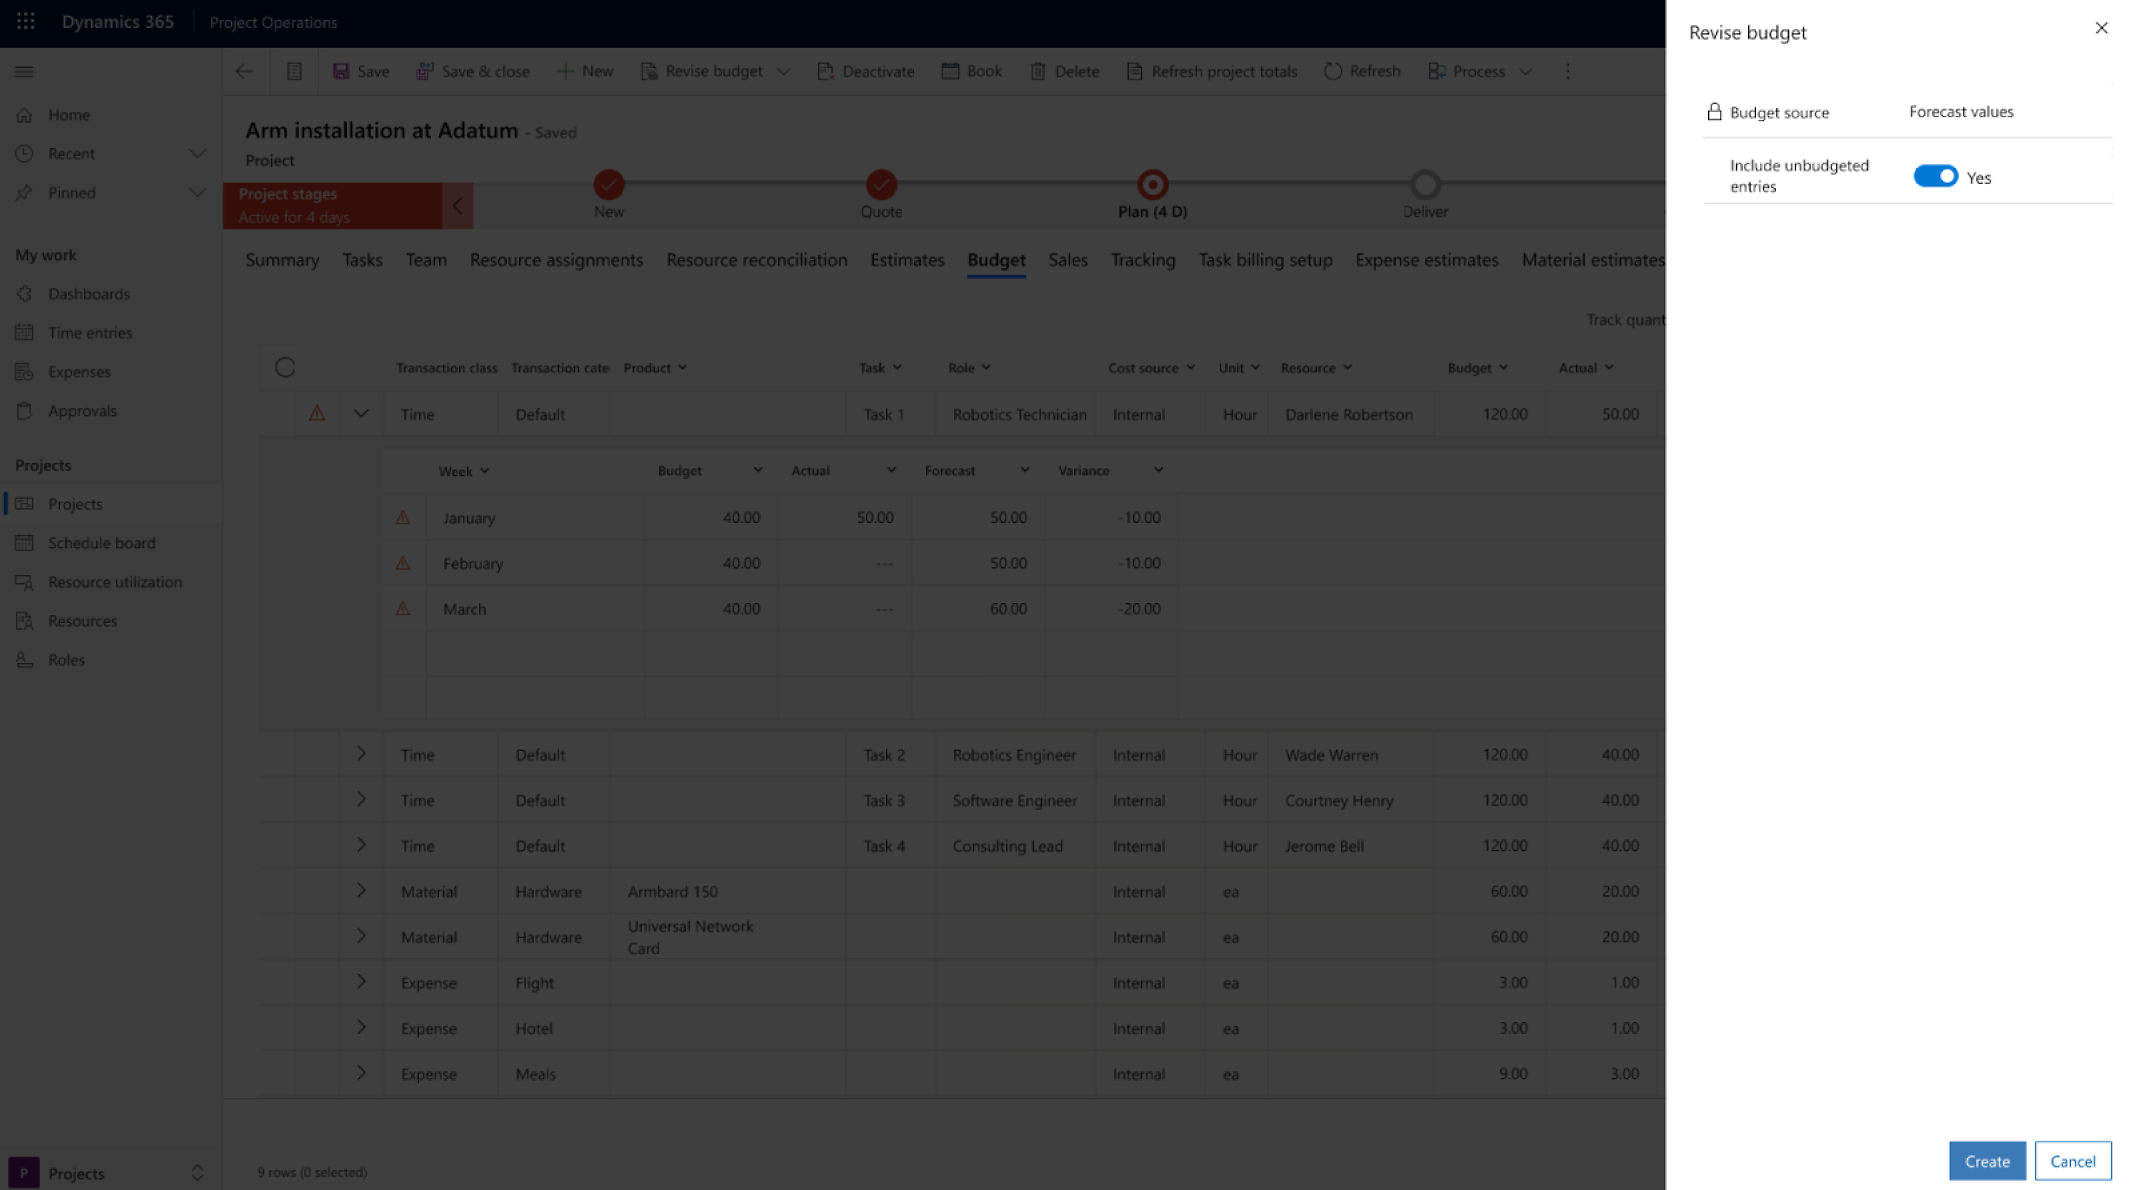 Captura de pantalla de una interfaz de revisión de presupuesto en Microsoft Dynamics 365 con un enfoque en Project Operations